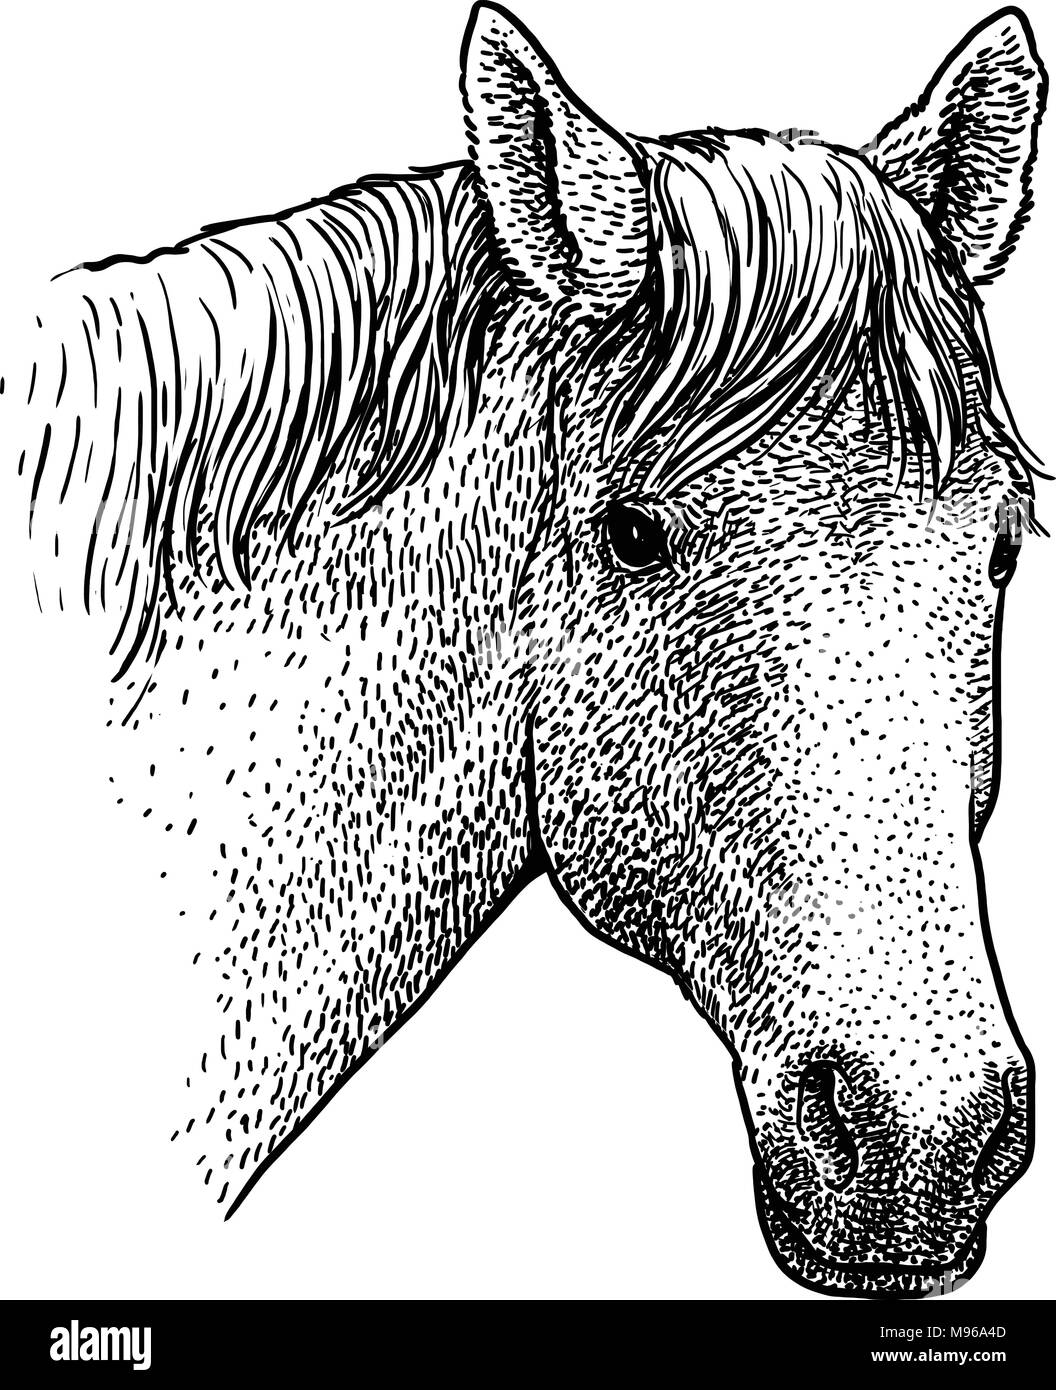 Pferdekopf Portrait Illustration, Zeichnung, Gravieren, Tinte, Strichzeichnungen, Vektor Stock Vektor